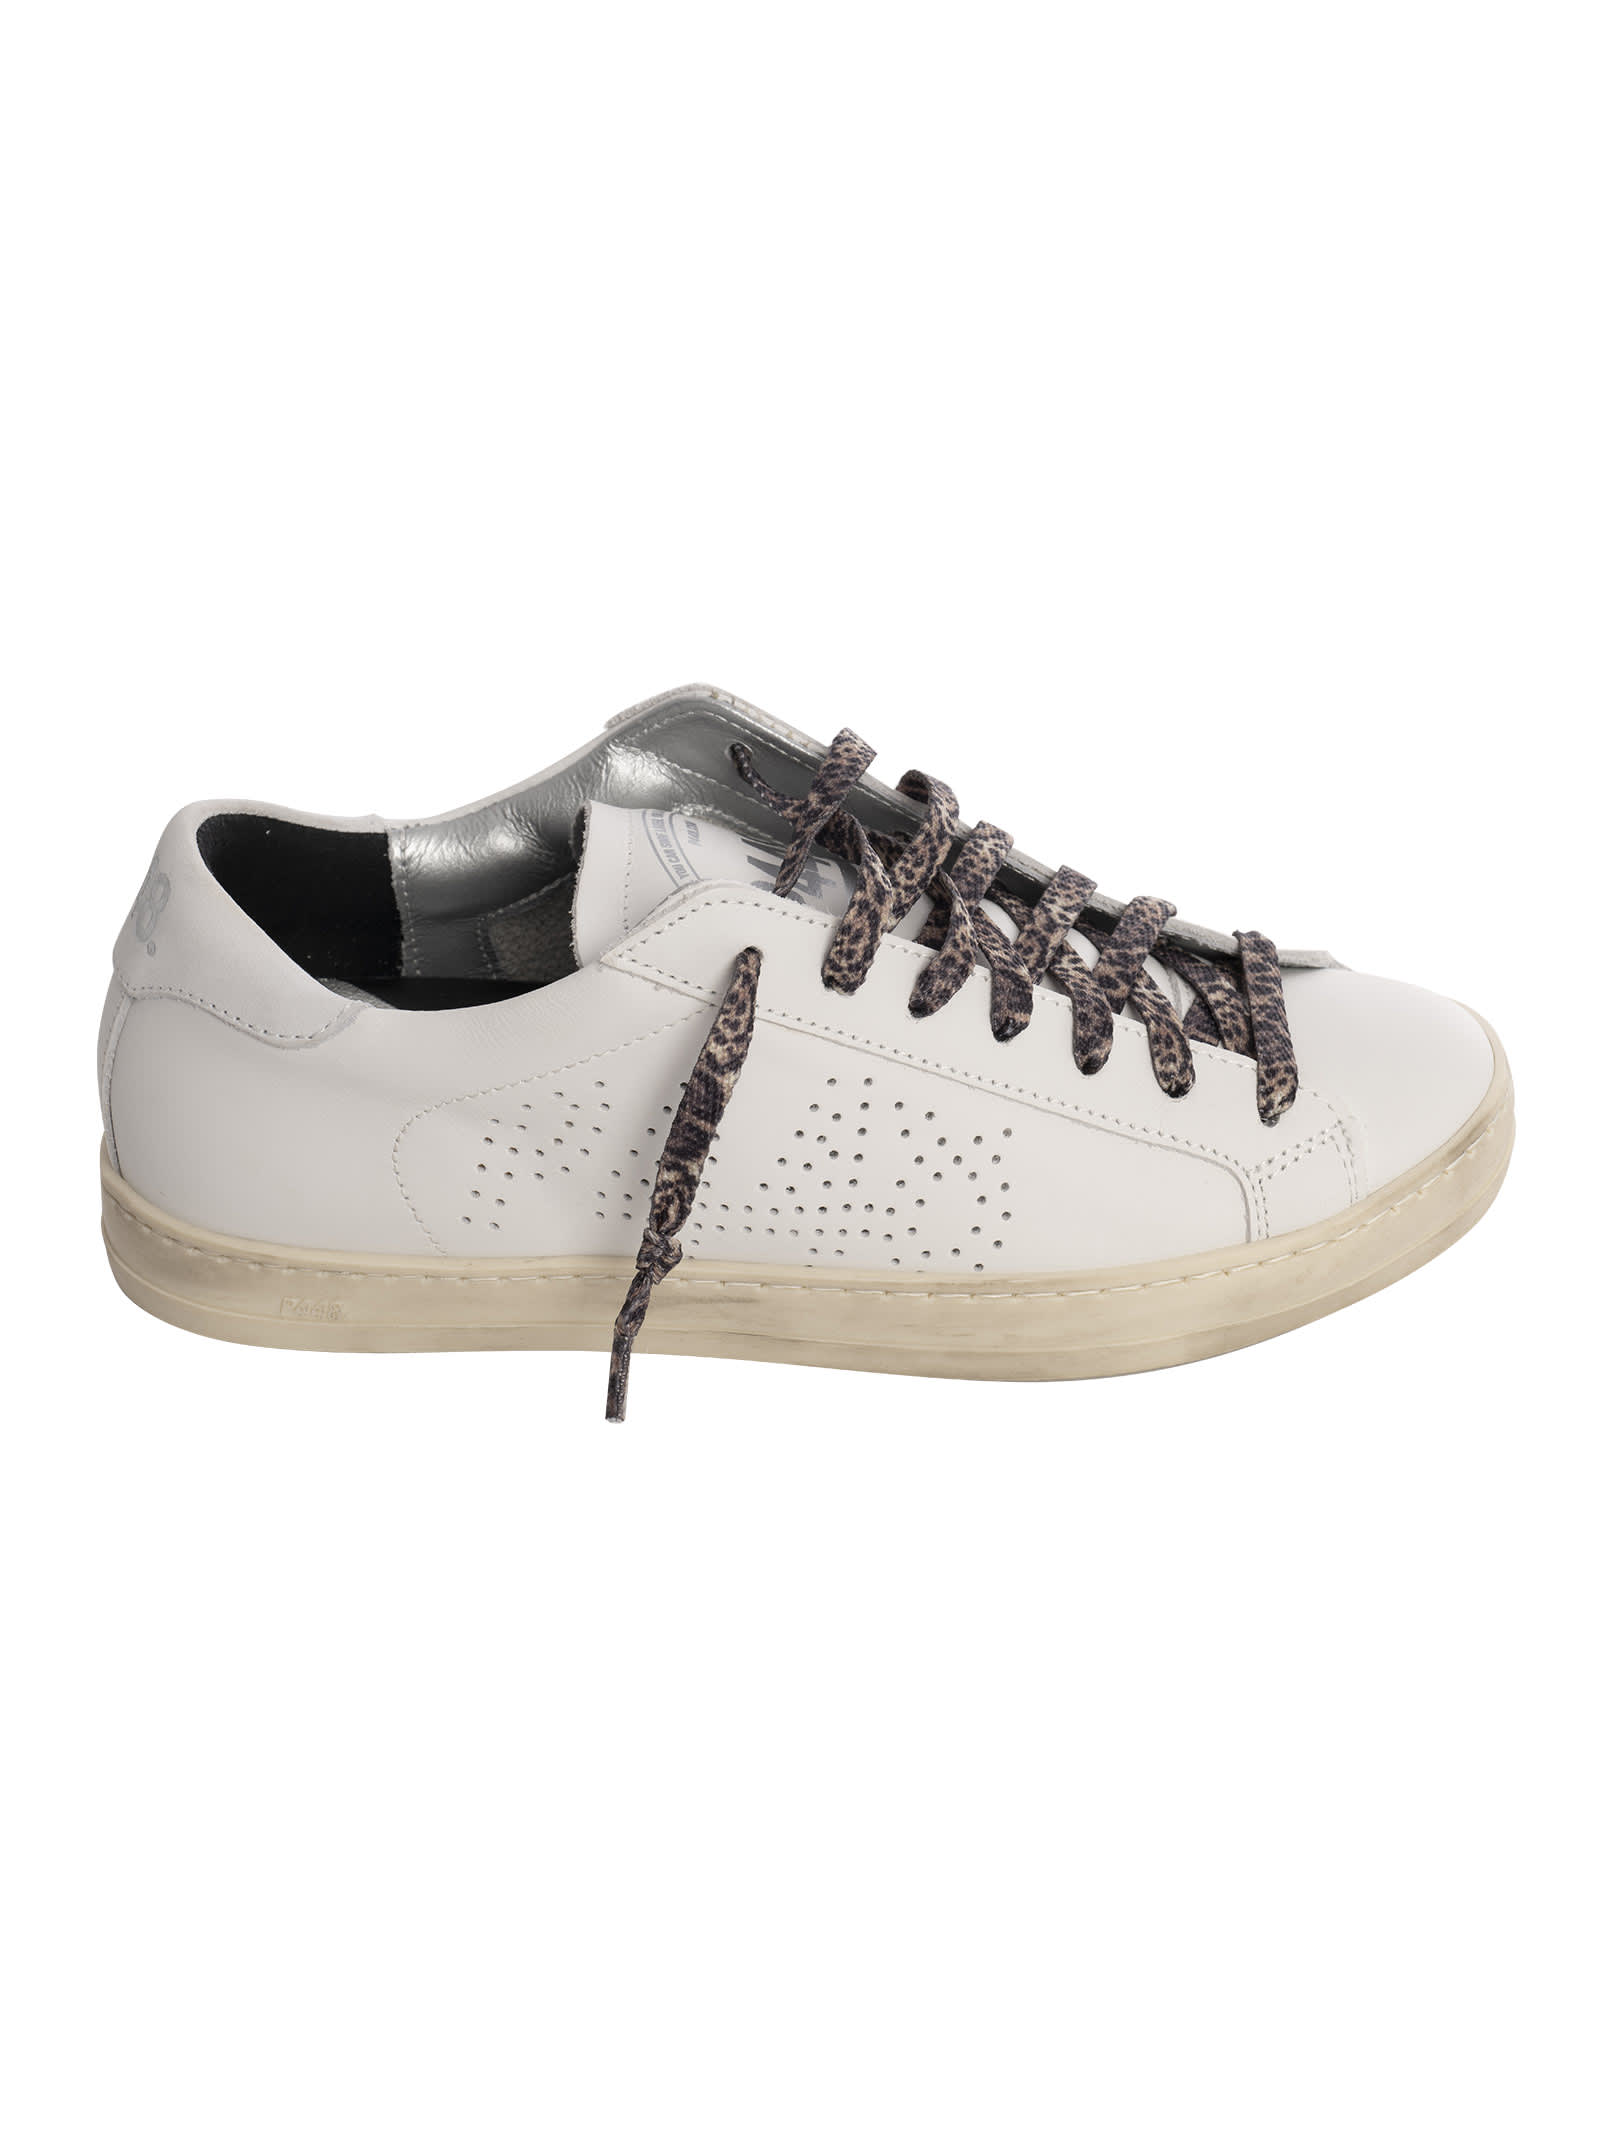 P448 John Whi-leo Sneakers